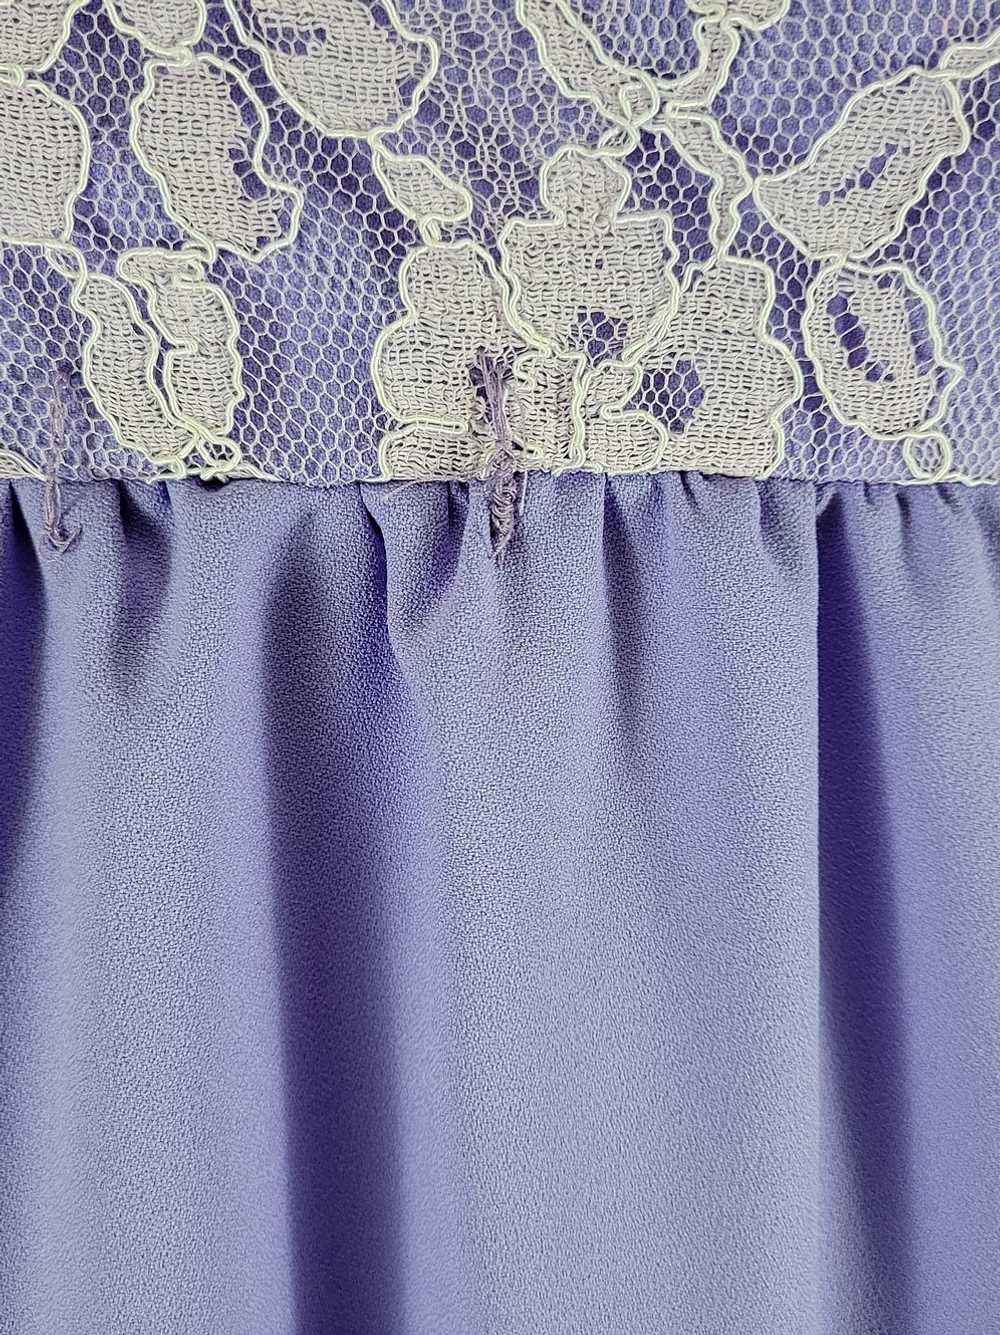 70s Lavender Empire Waist Lace Maxi Dress - image 5